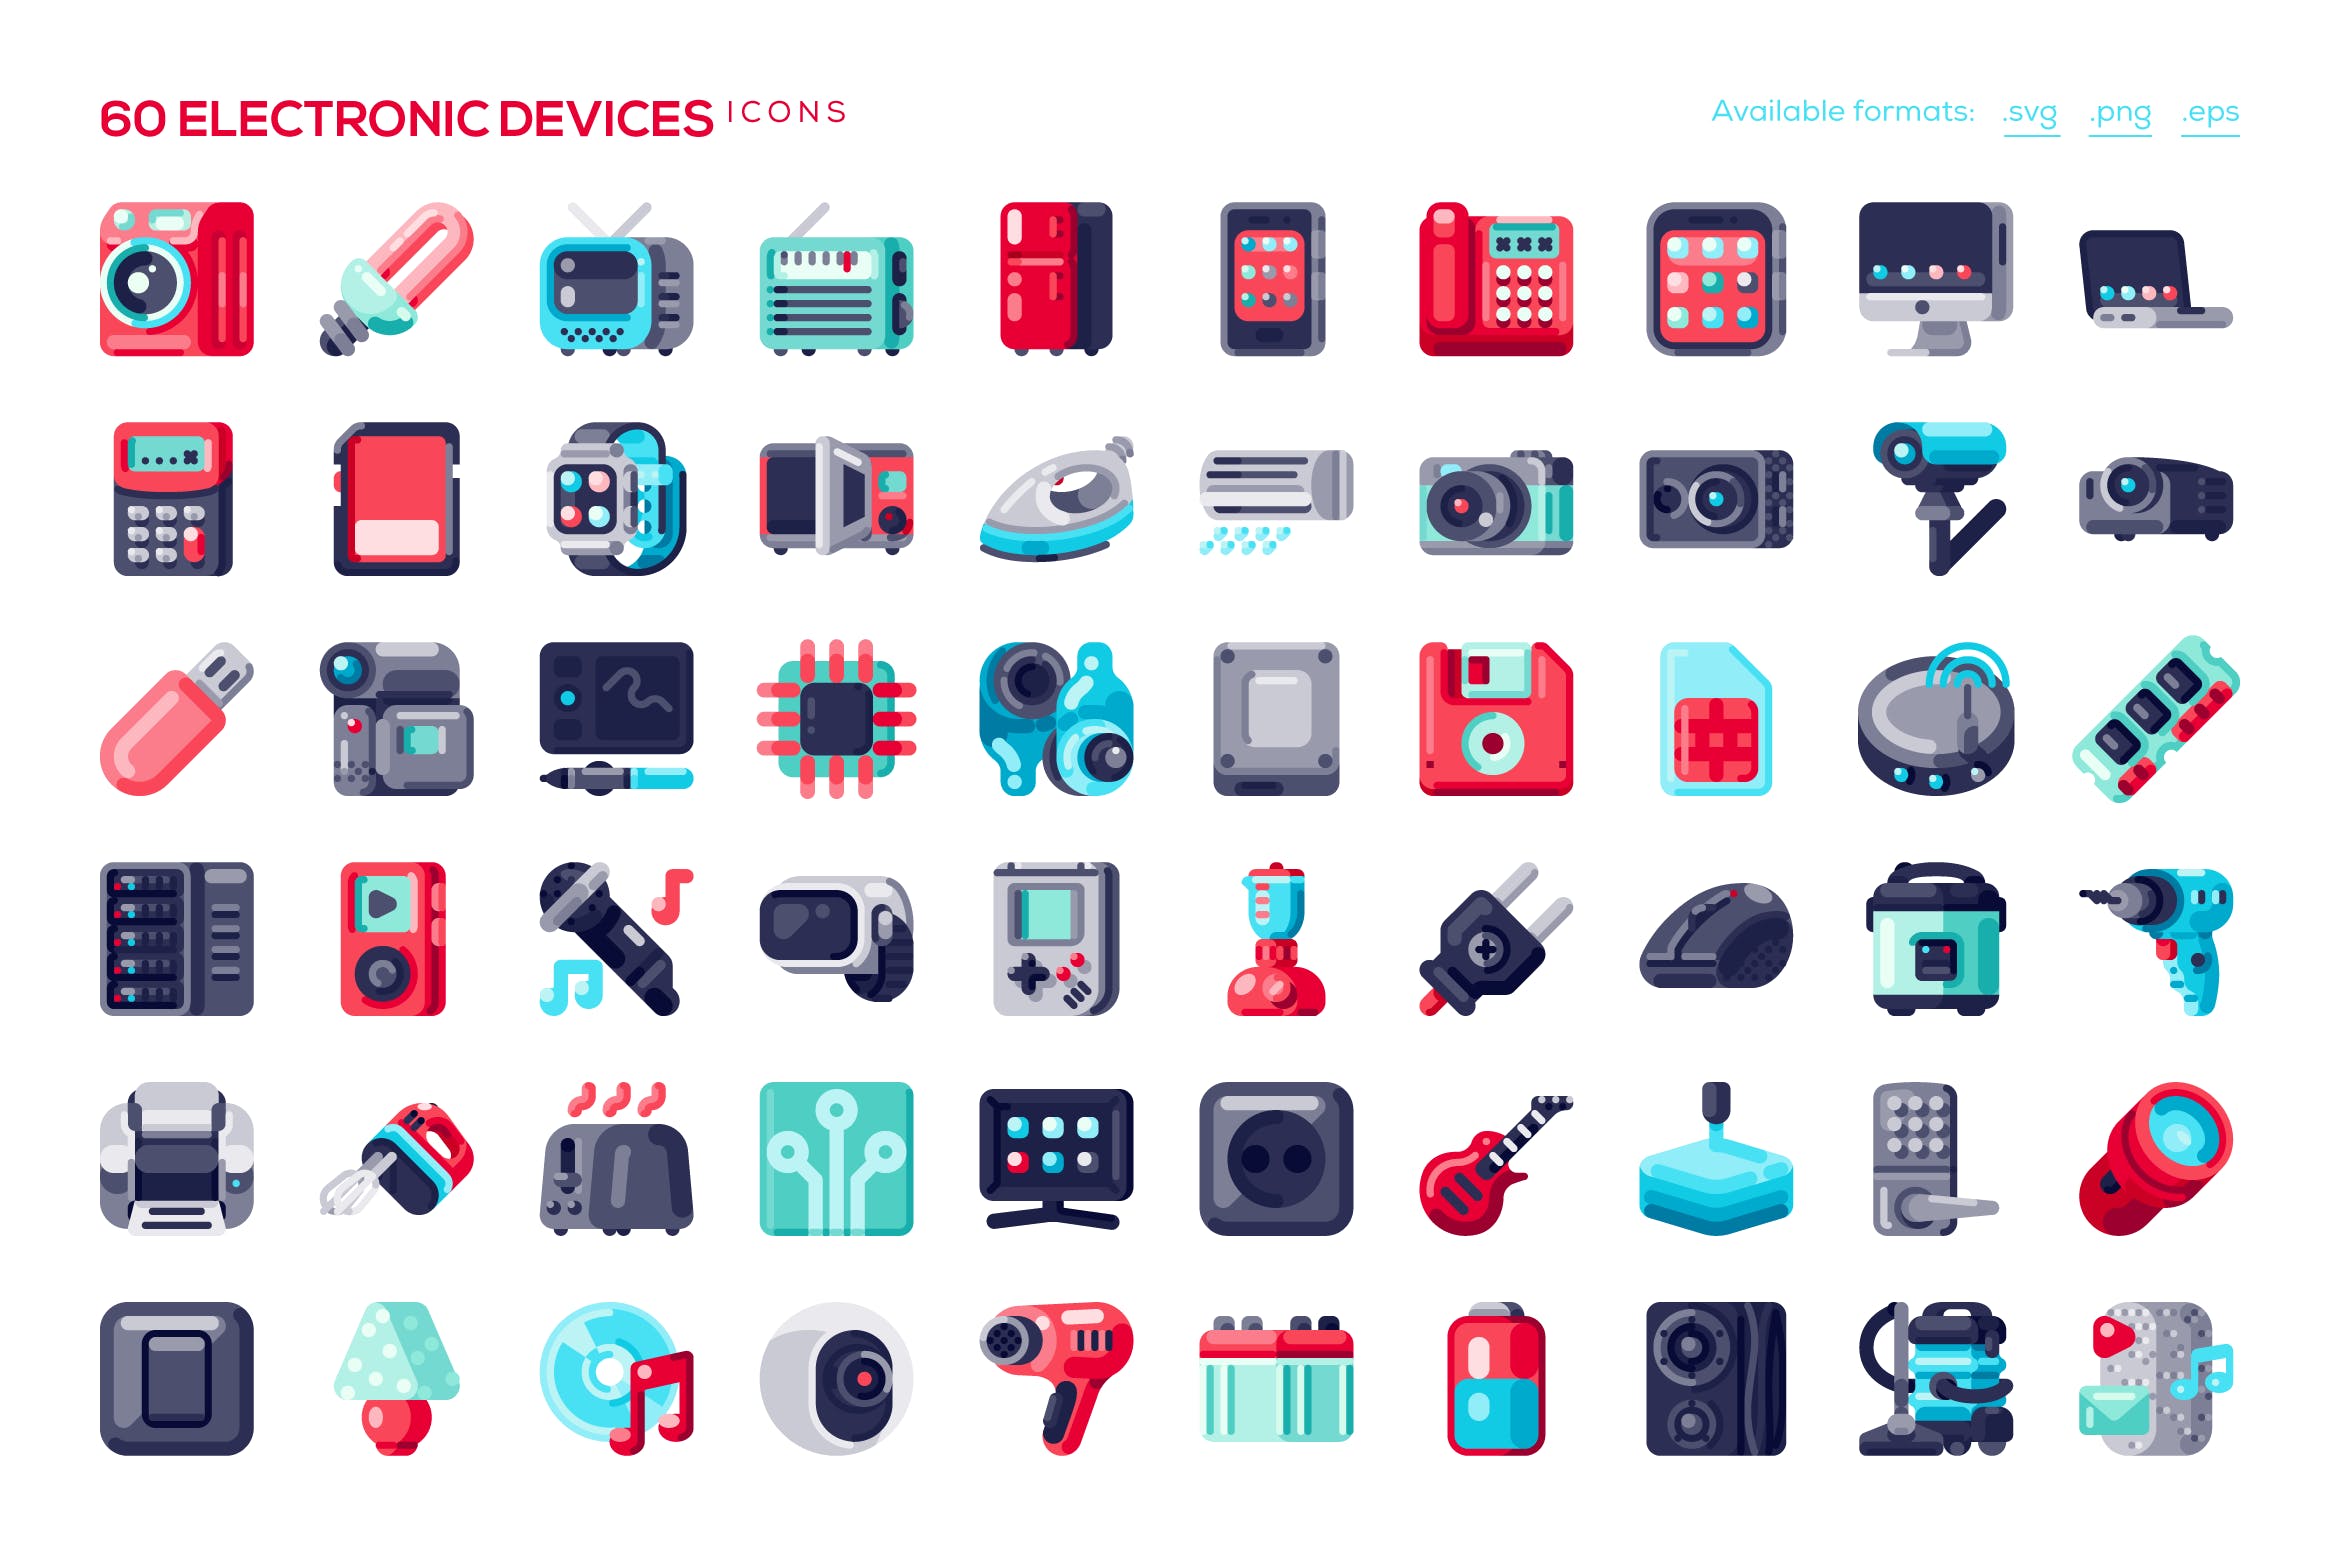 60个电子设备图标创意类矢量图标下载60 Electronic Devices Icons